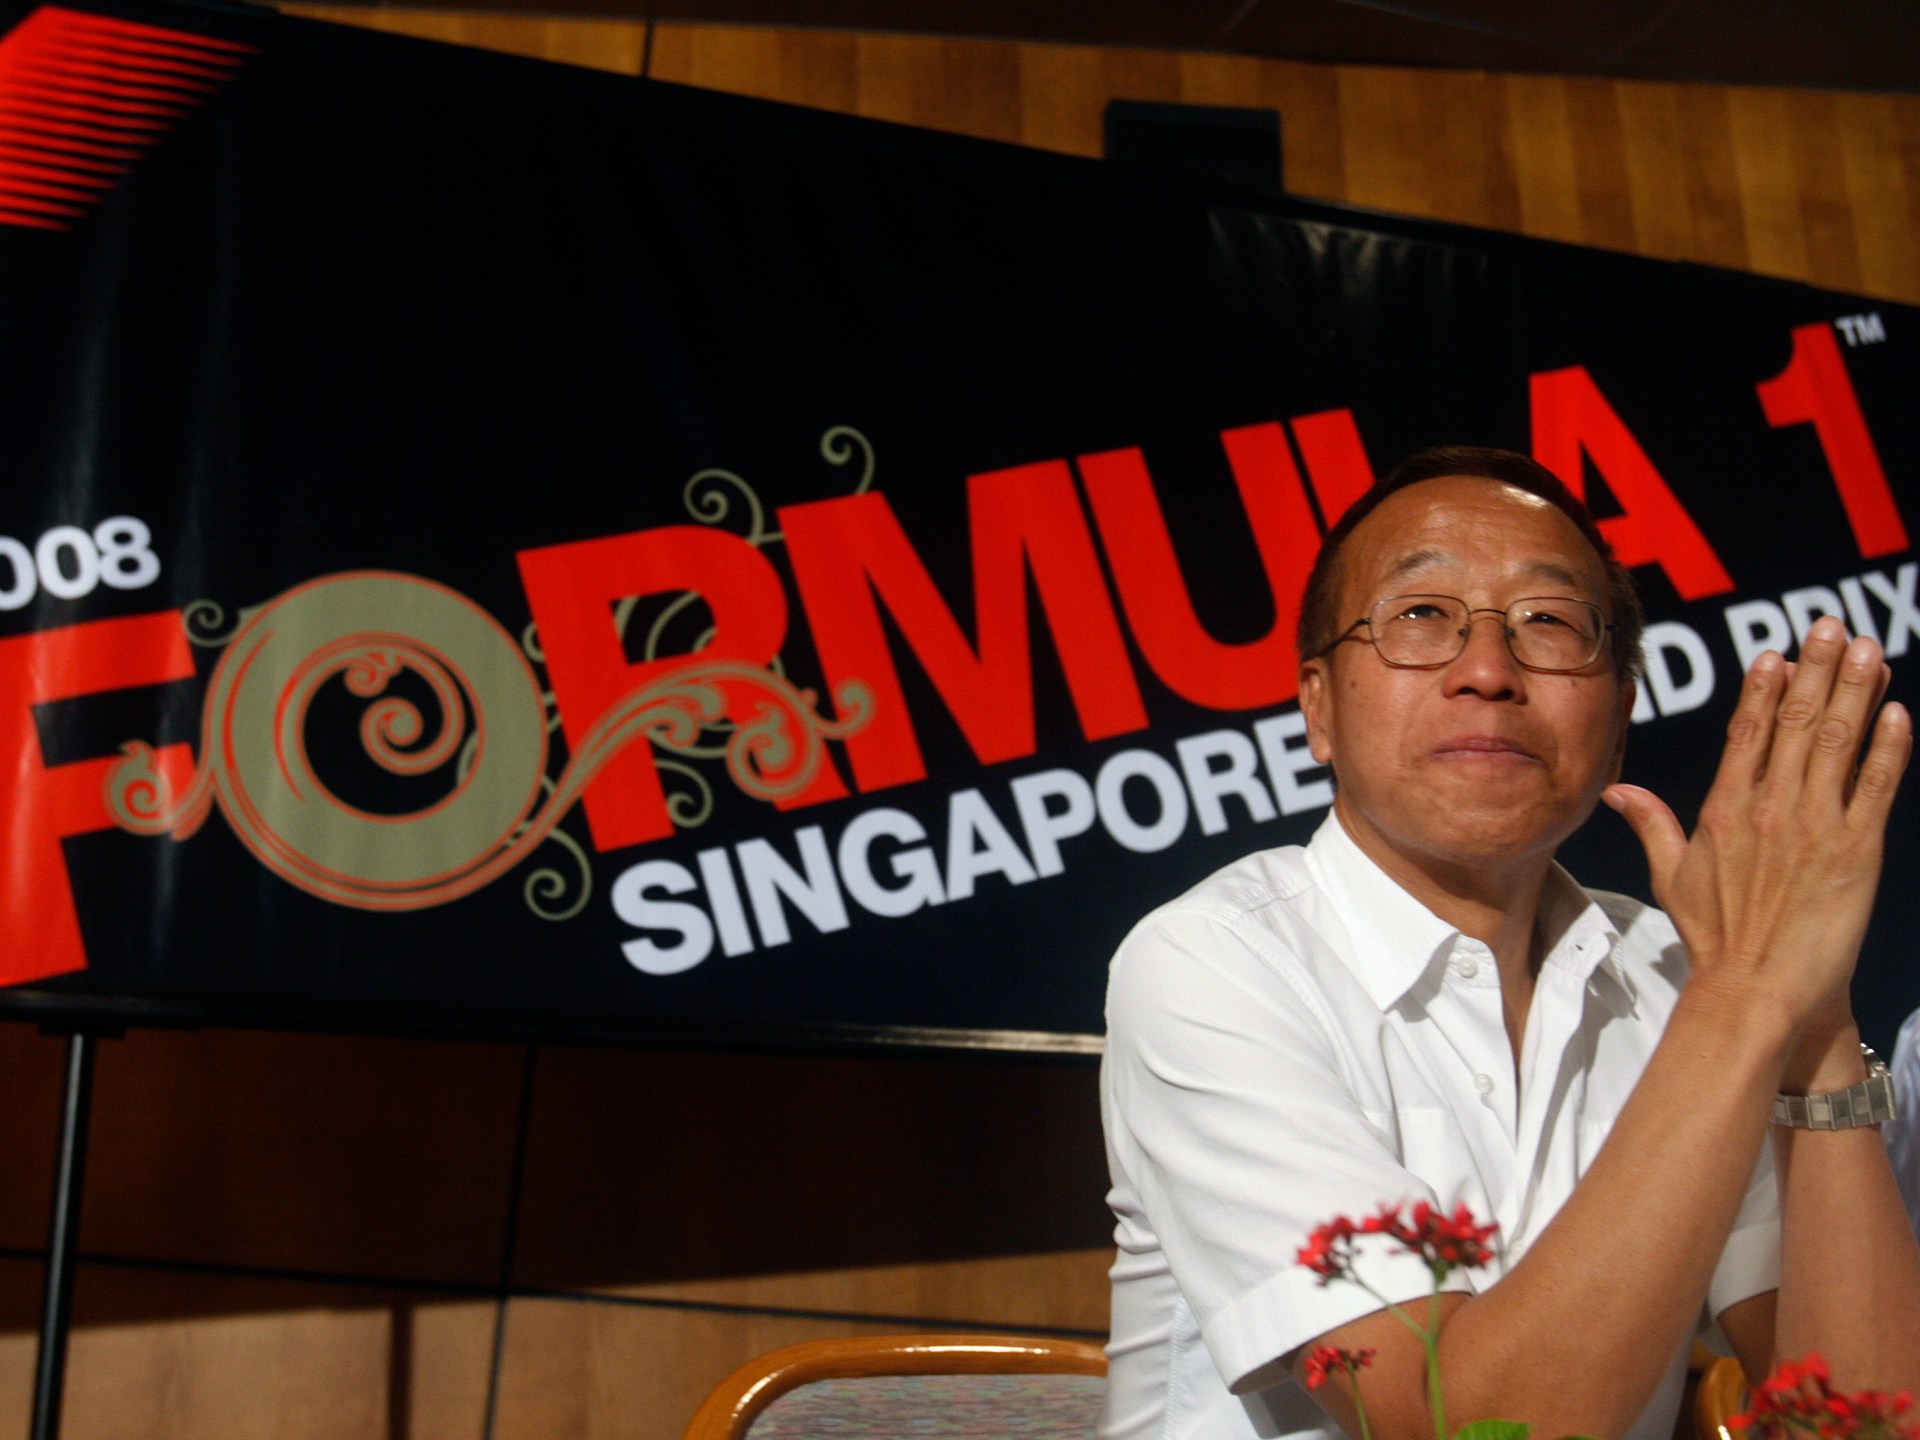 싱가포르, 부패 수사 중인 억만장자 옹에 대한 체포영장 발부 |  부패